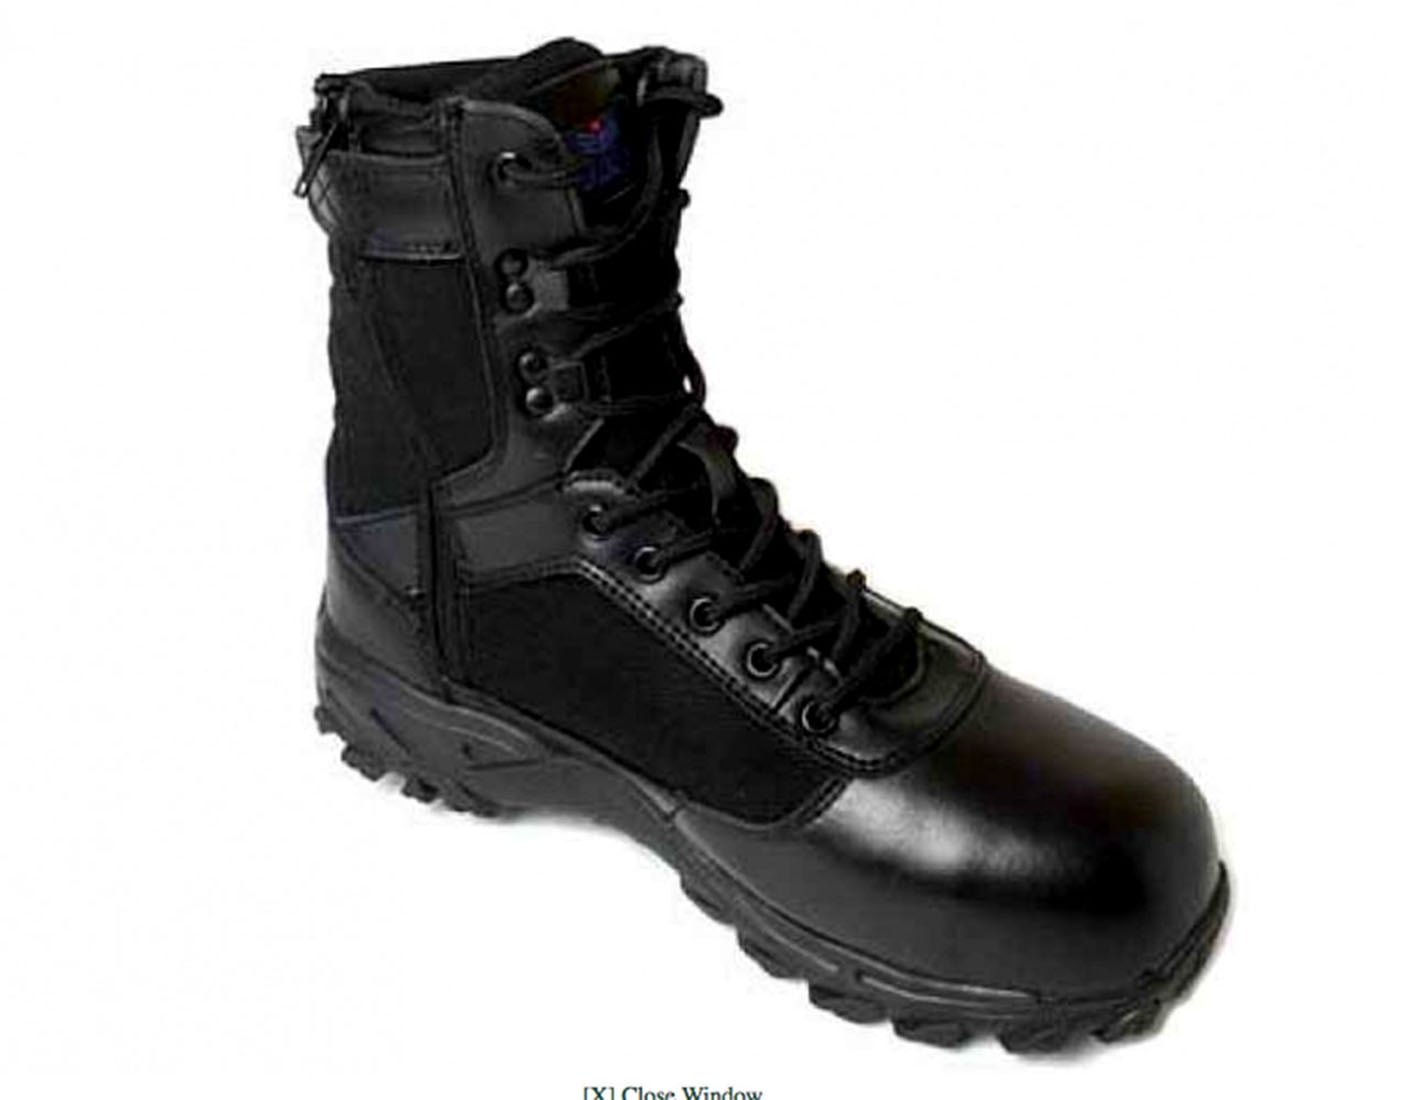 4e wide steel toe work boots